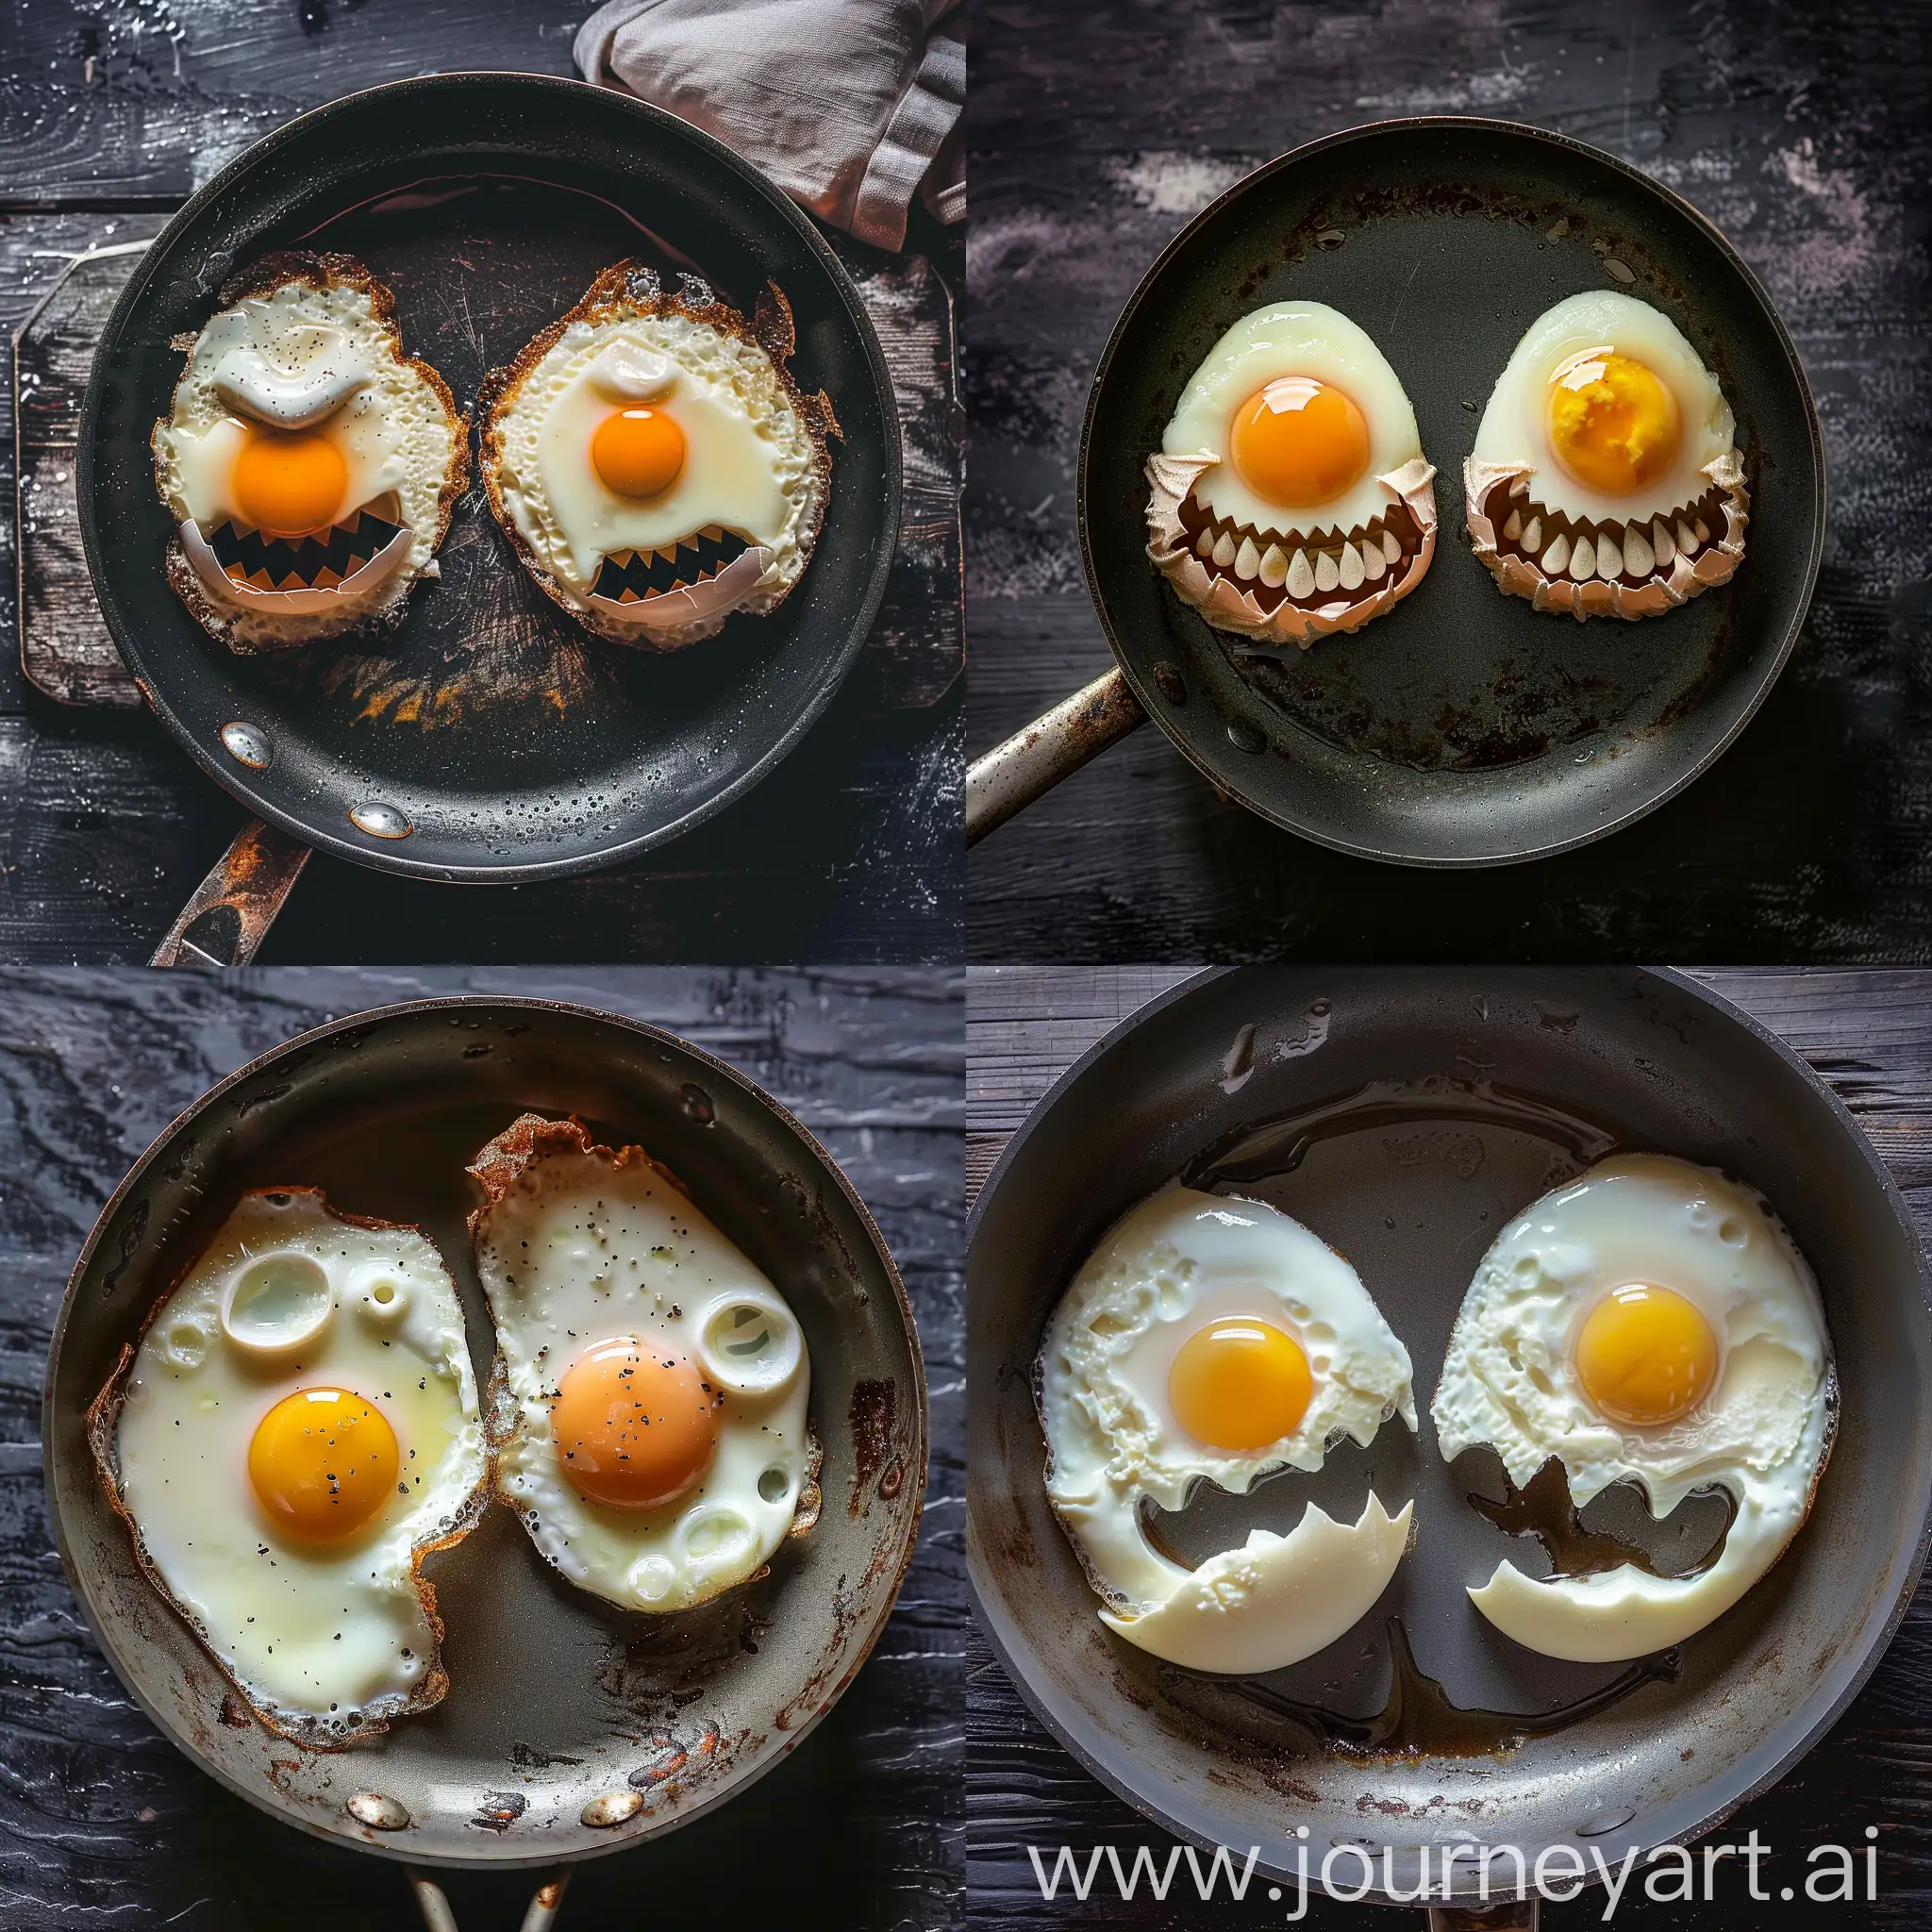 Dos huevos fritos en una sartén, foto surrealista, los huevos están dispuestos de tal forma que parece un monstruo terrorífico, hiper detallado, hiper realista